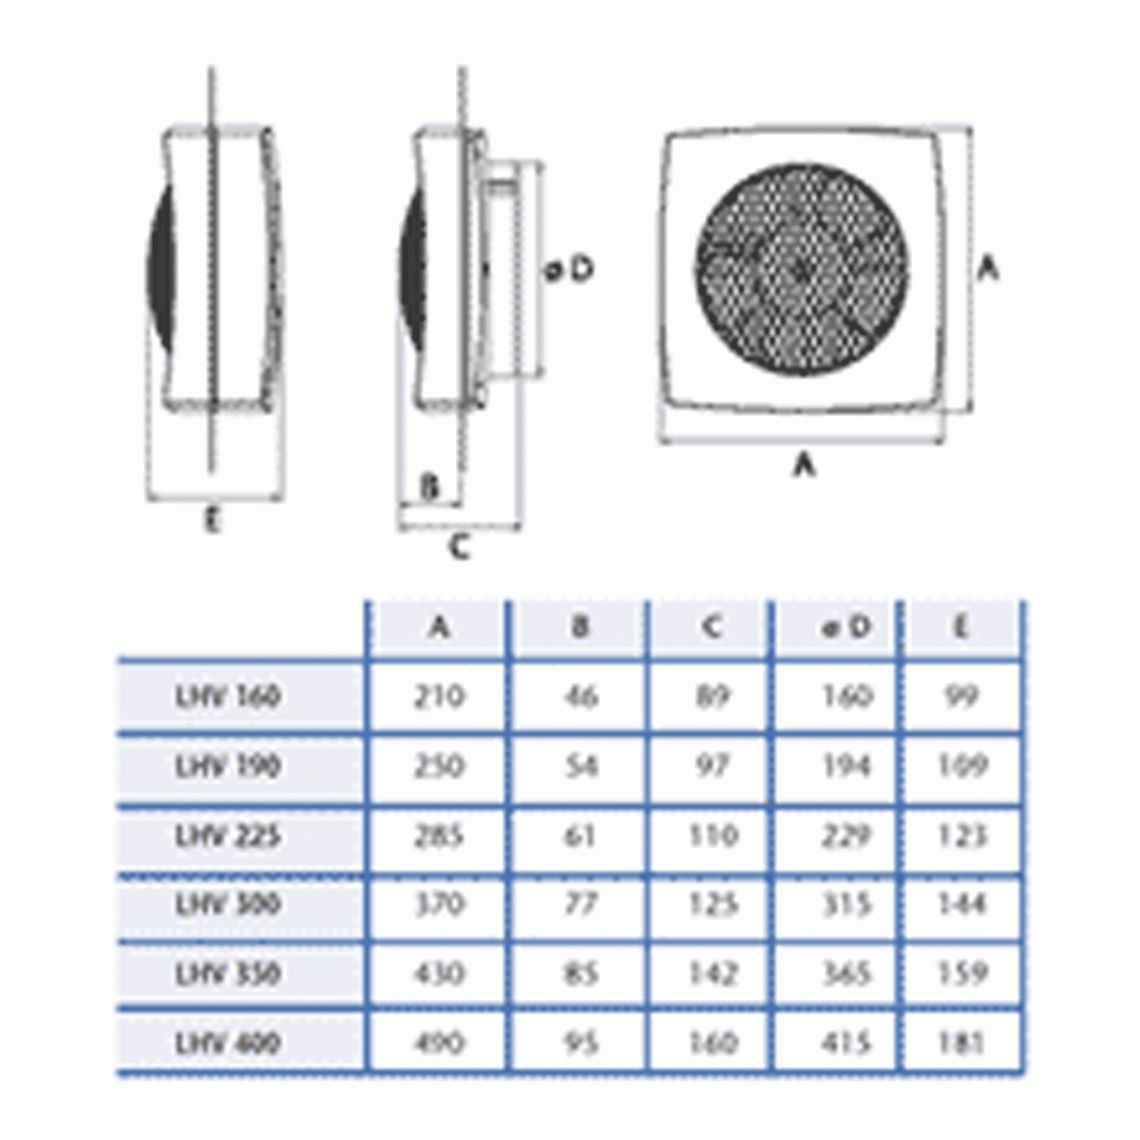 Ventilator Exhaust Fan Size • Ideas